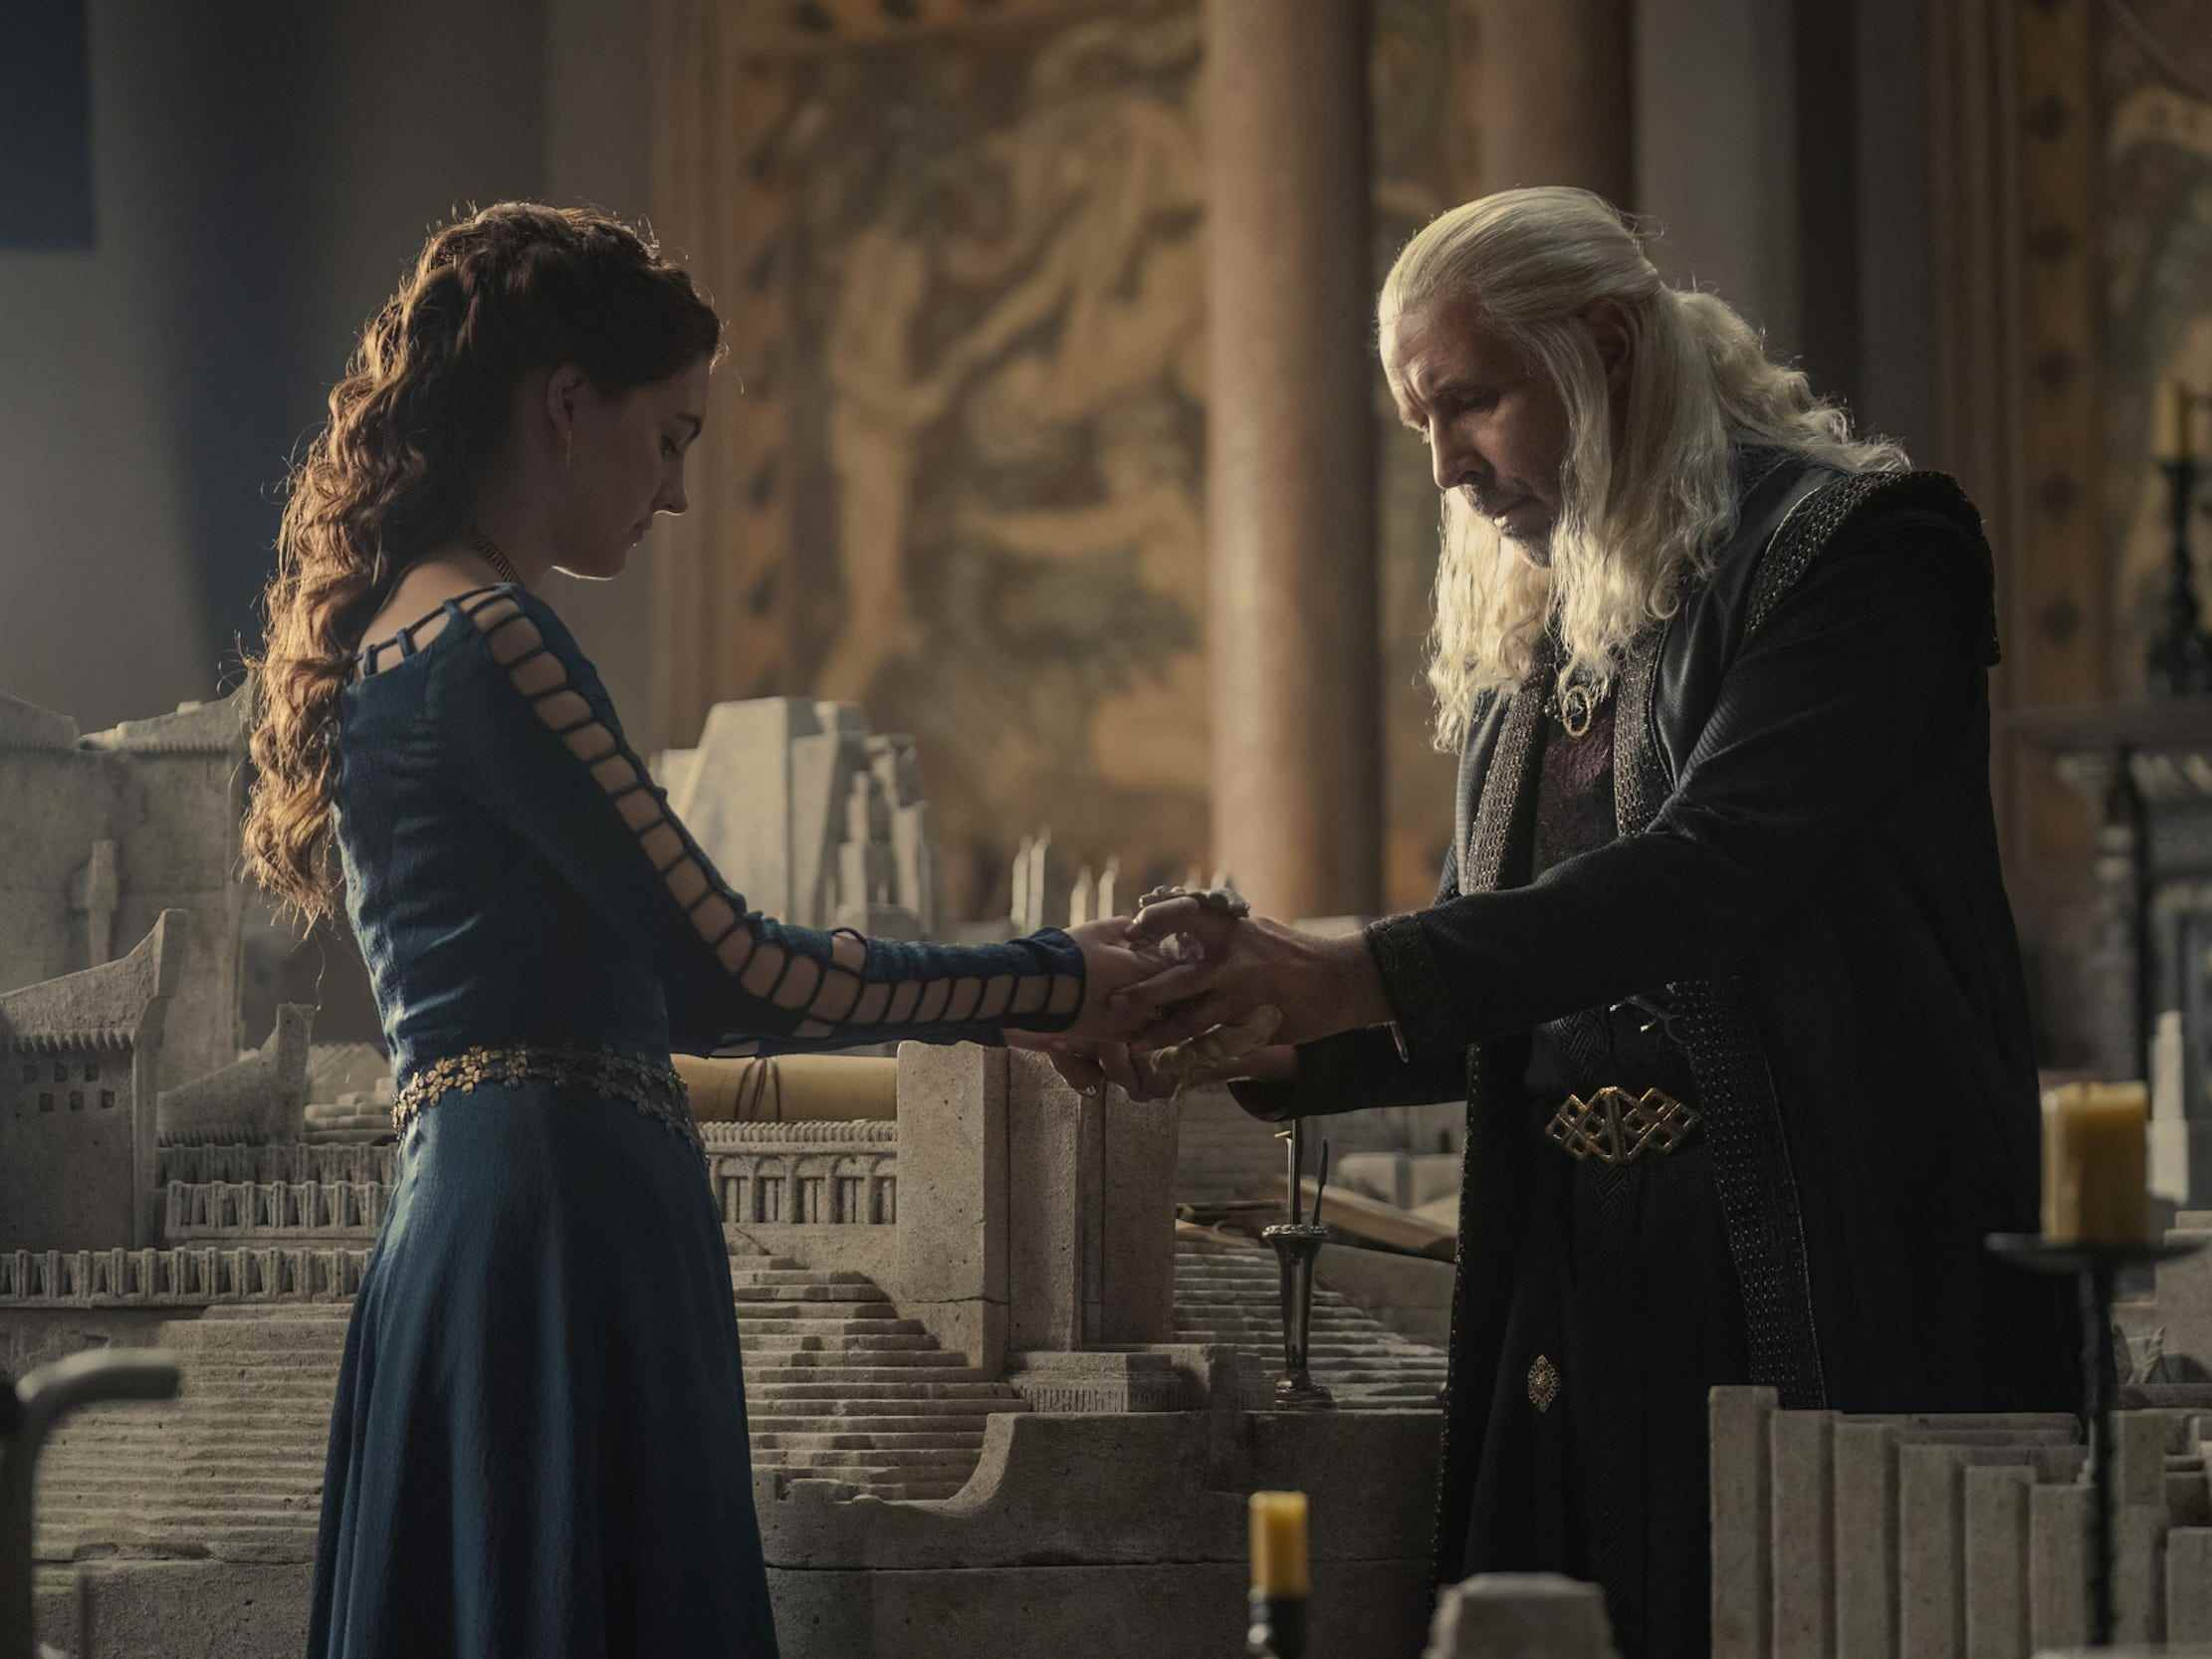 Ein junges Mädchen in einem blauen Kleid hält einem älteren Mann mit langen silbernen Haaren einen steinernen Drachen entgegen.